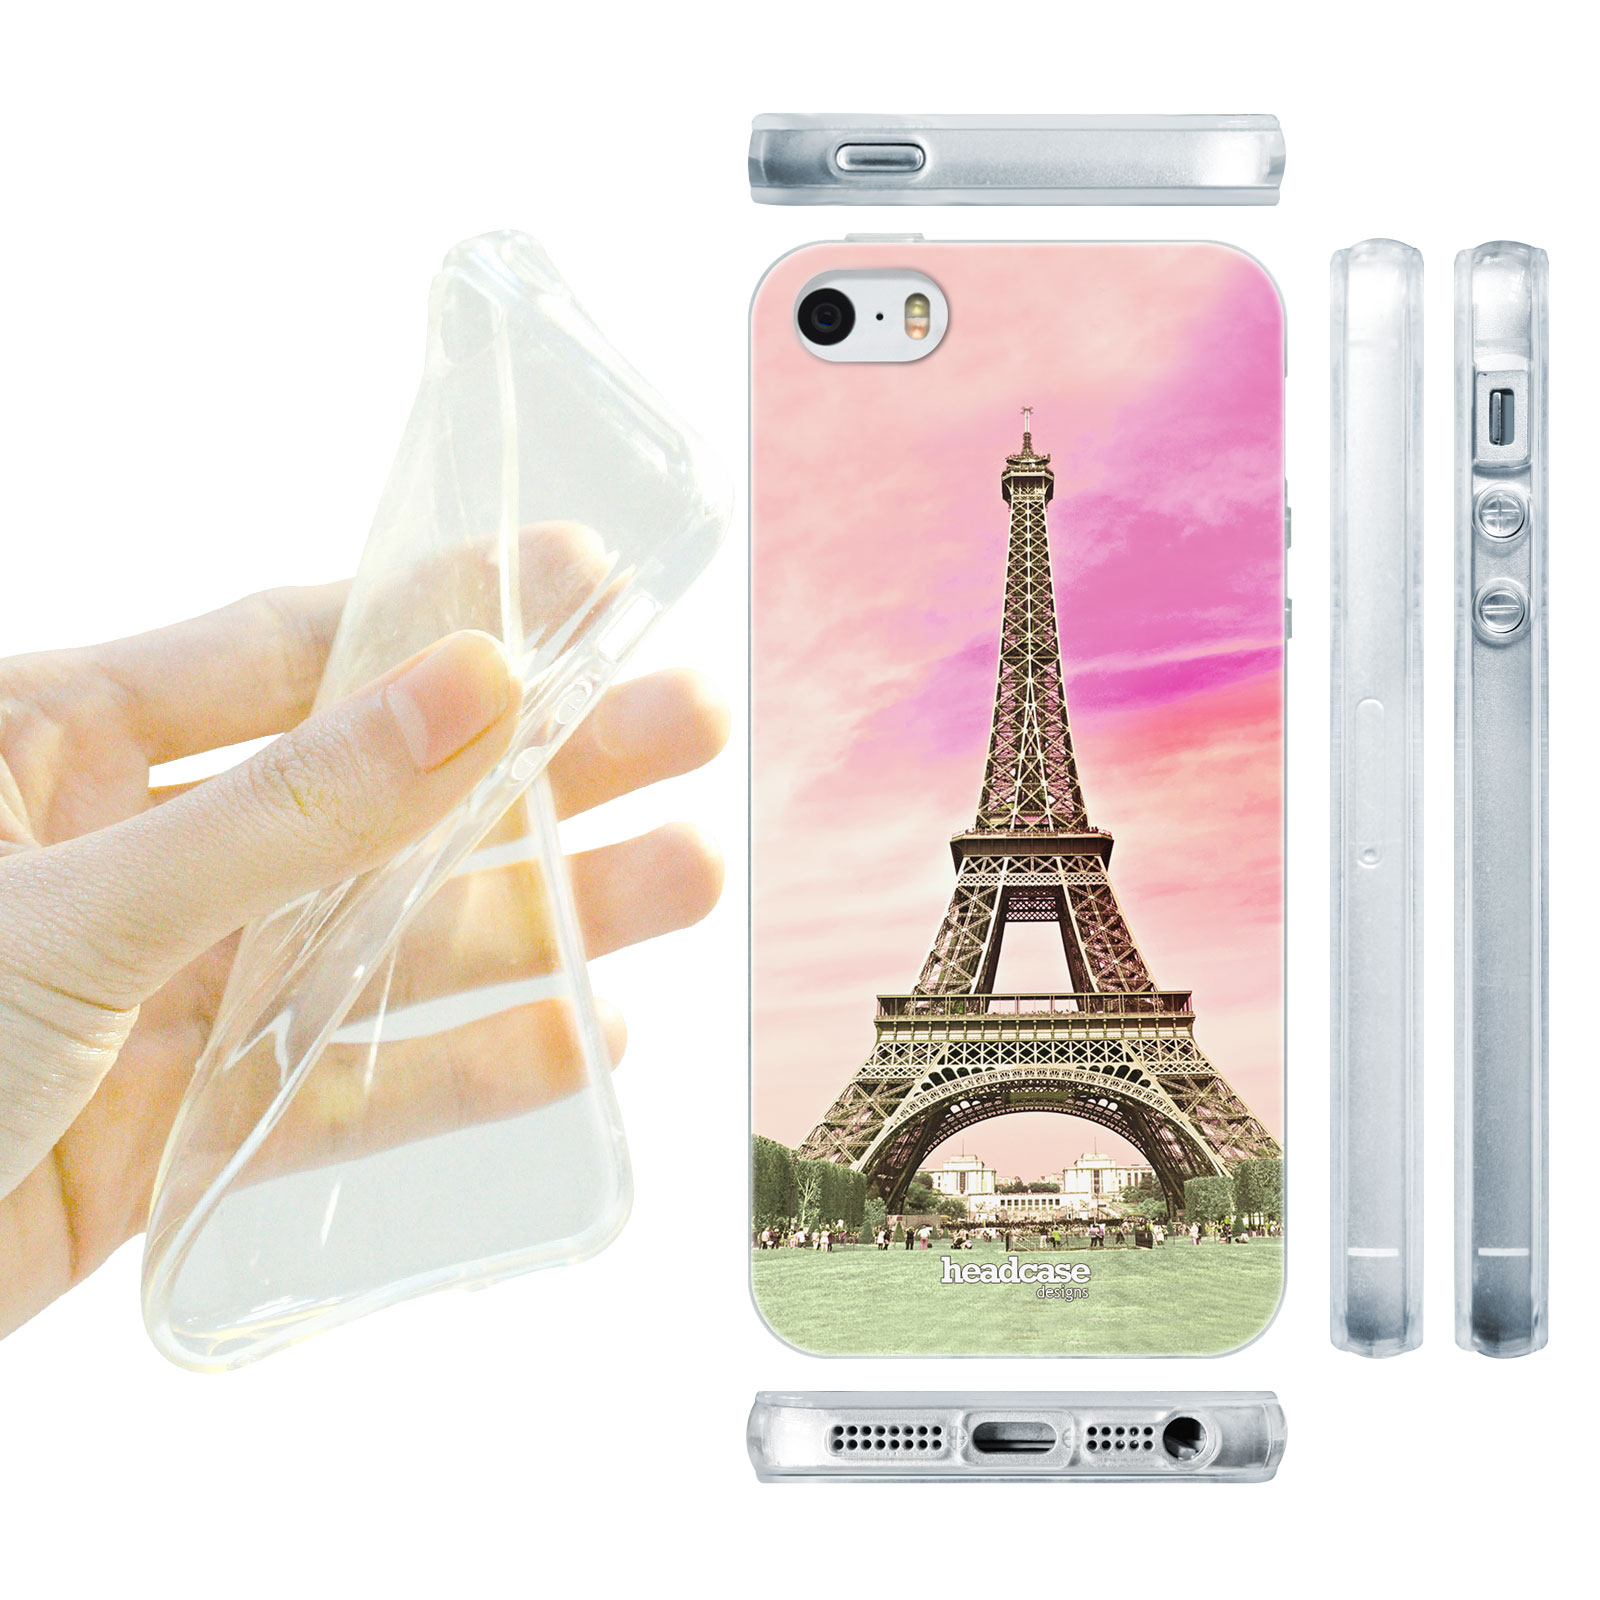 HEAD CASE silikonový obal na mobil Iphone 5/5S nejkrásnější místa Eiffelova věž